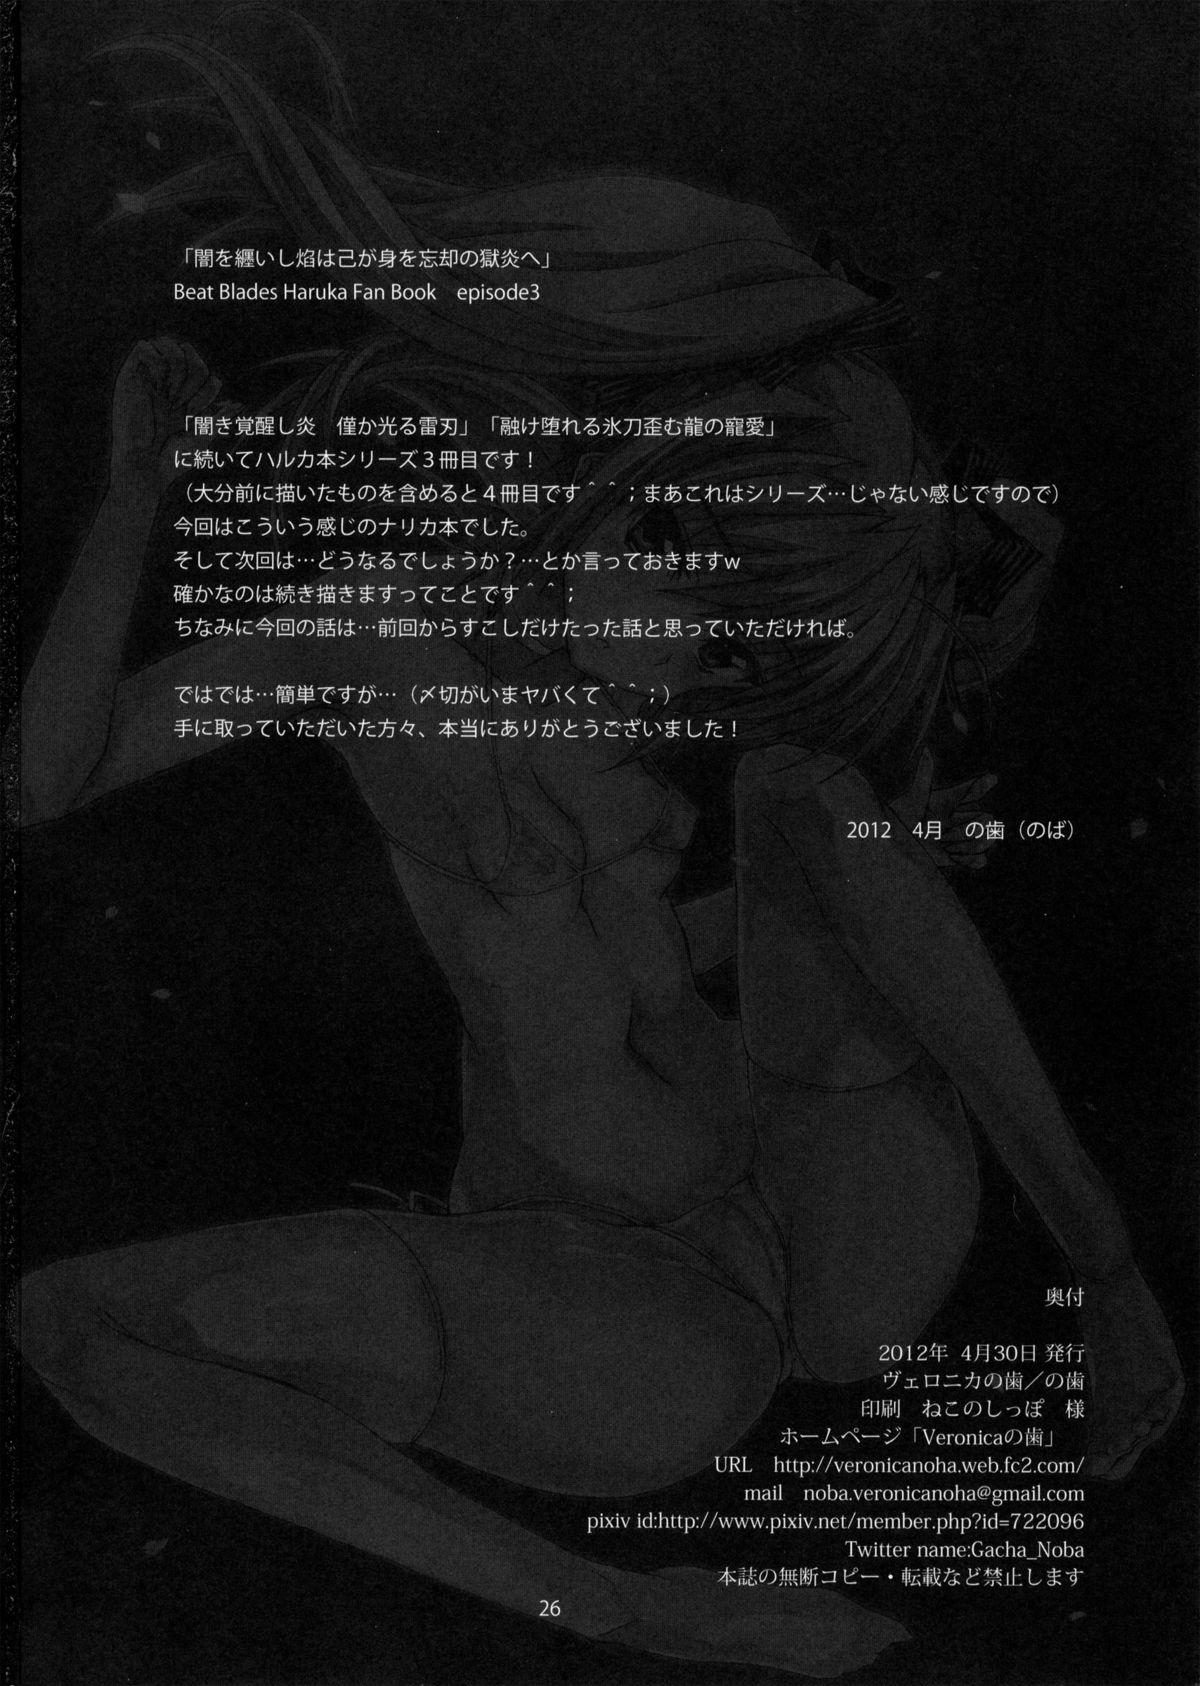 Party Yami wo Matoishi Homura wa Ono ga Mi wo Boukyaku no Gokuen e - Beat blades haruka Amature Porn - Page 25